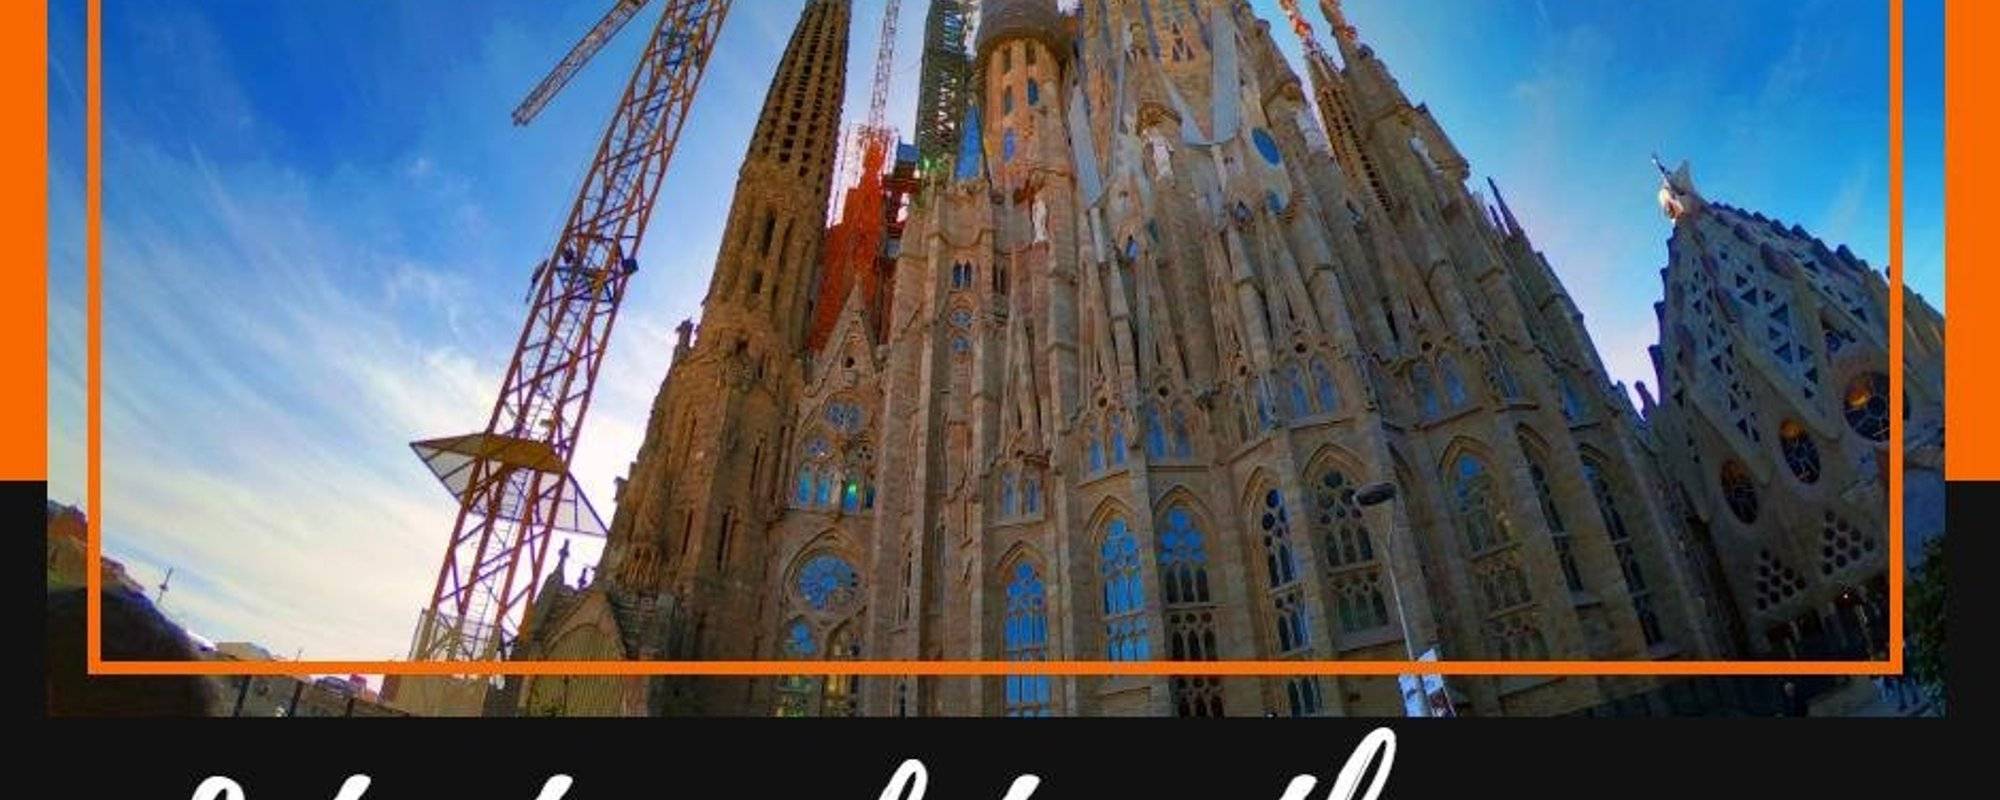 Let's travel together #114 - La Sagrada Família Basilica (Barcelona Tour)